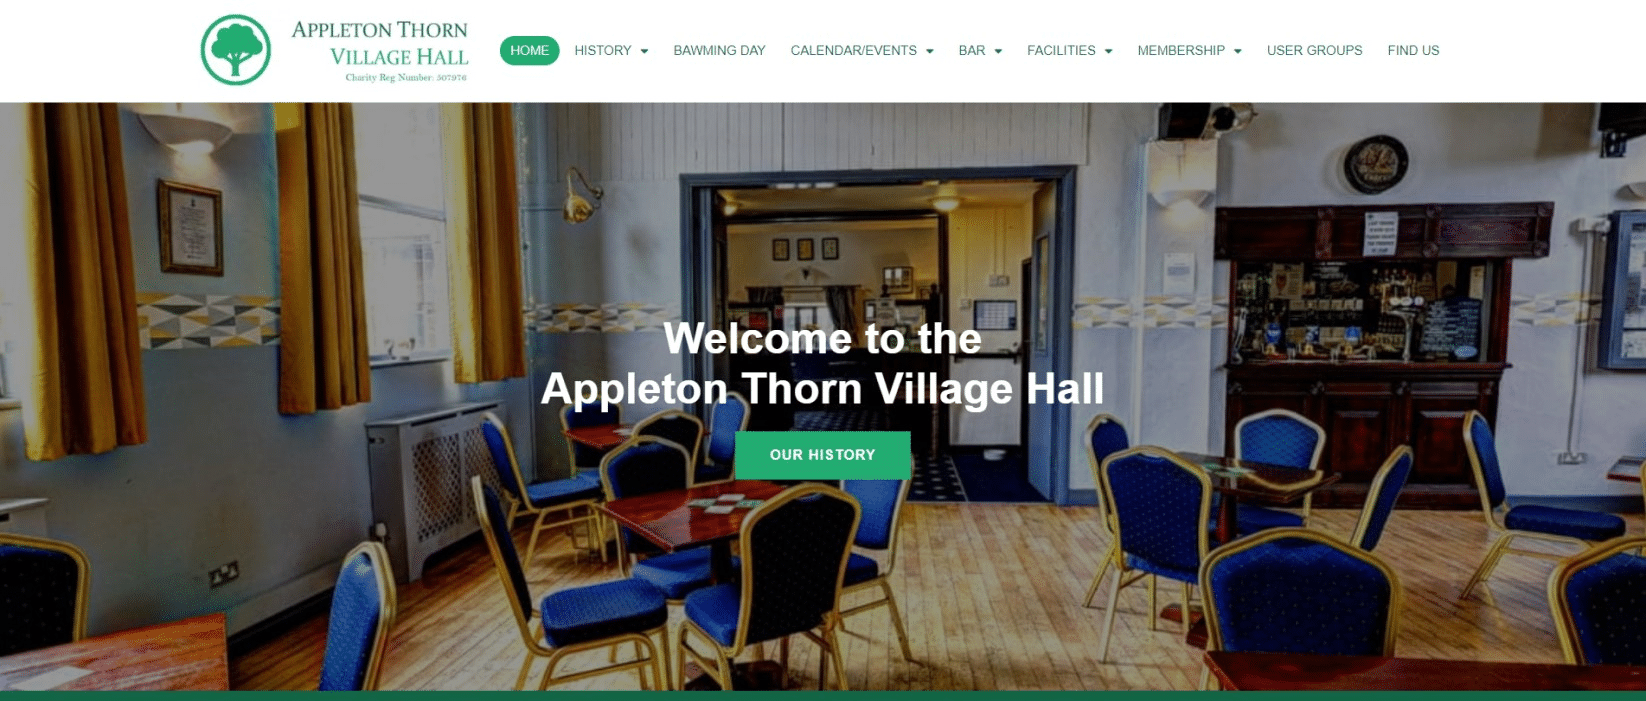 Appleton Thorn Village Hall-After